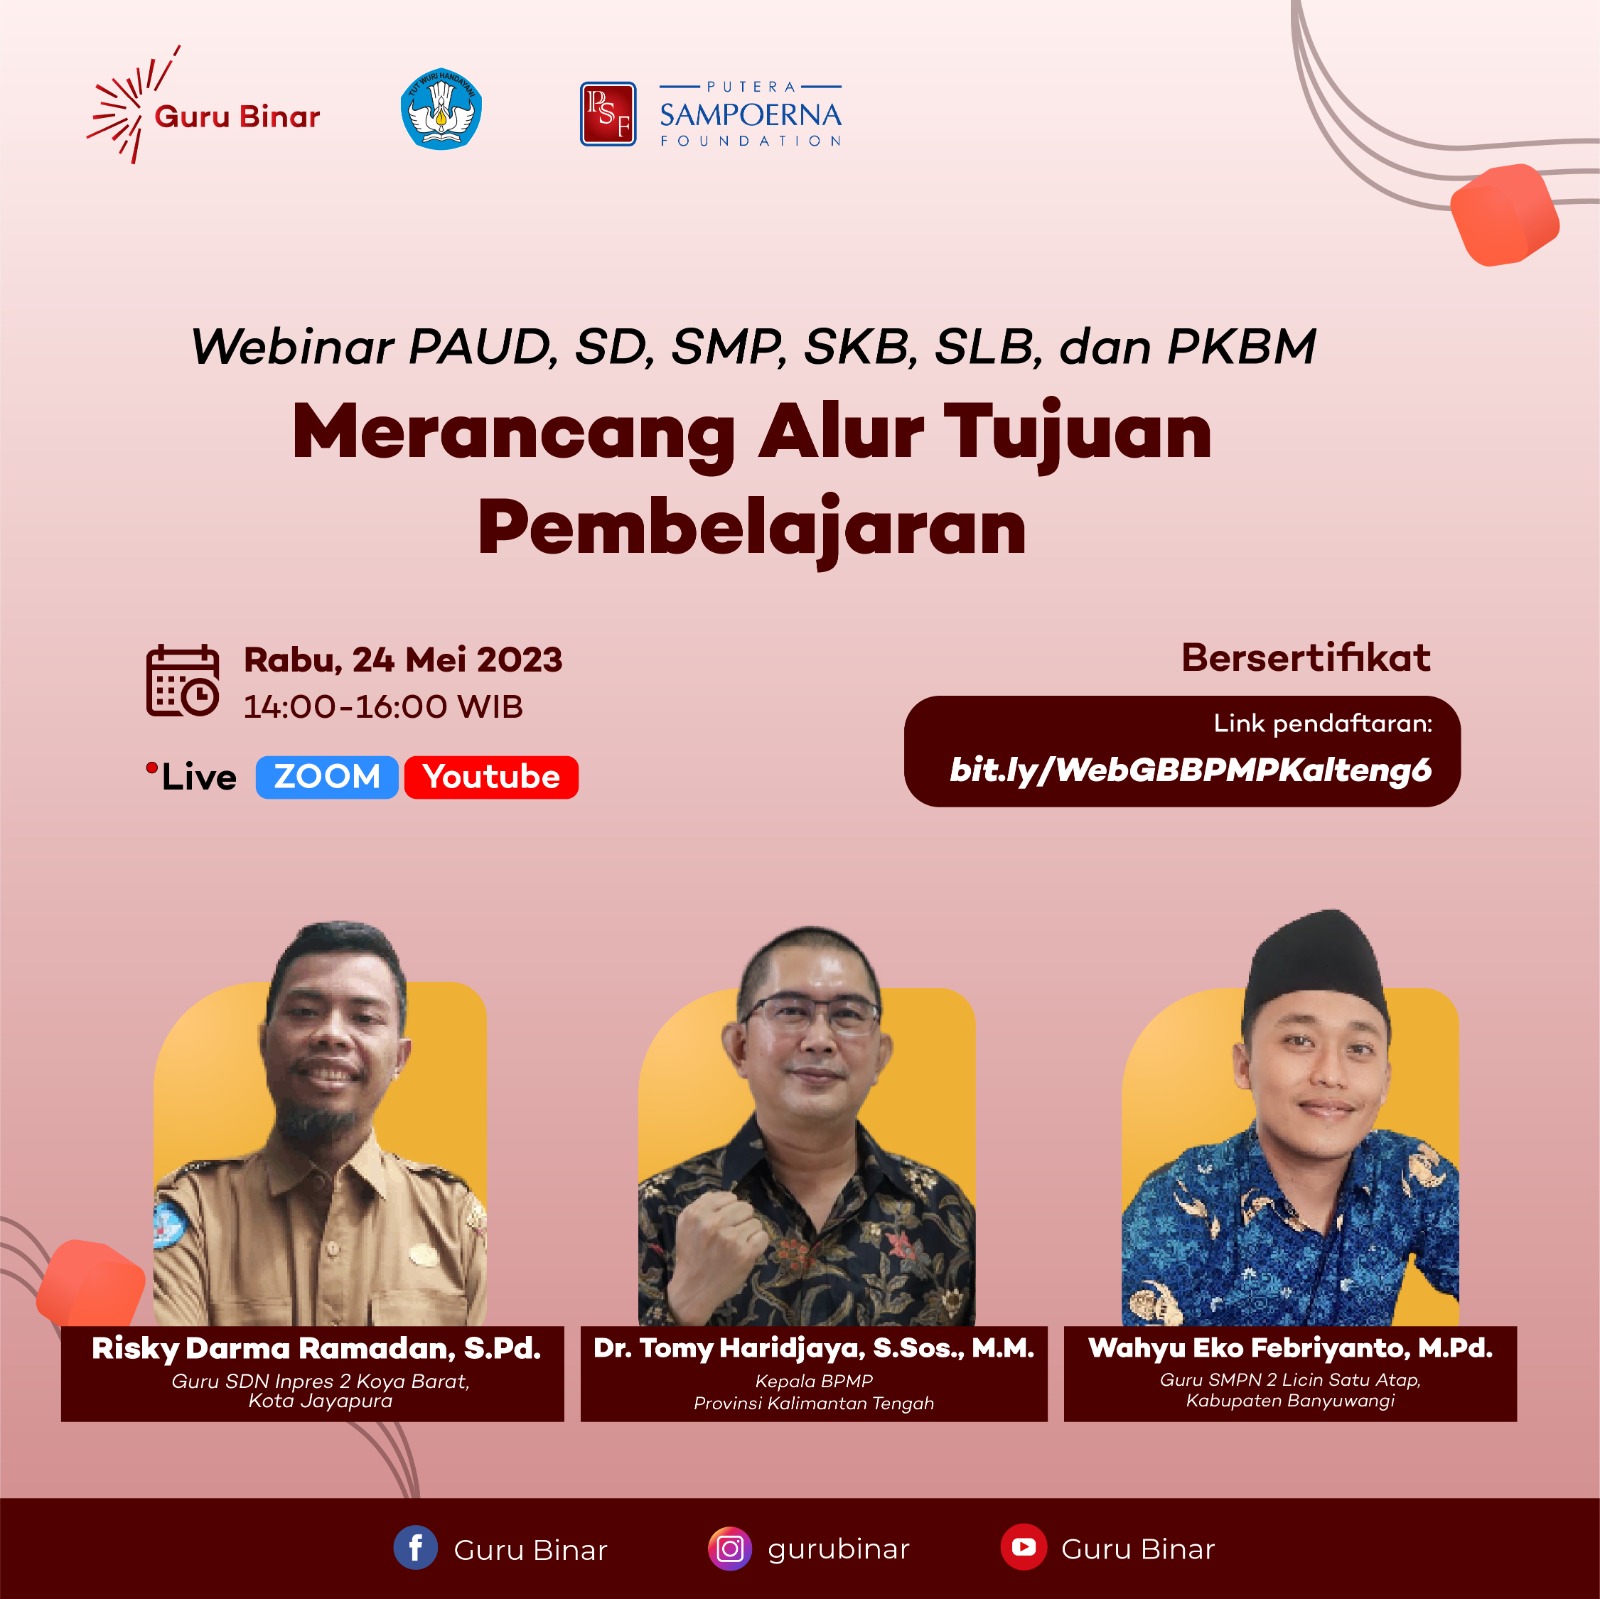 Photo Merancang Alur Tujuan Pembelajaran Kalimantan Tengah